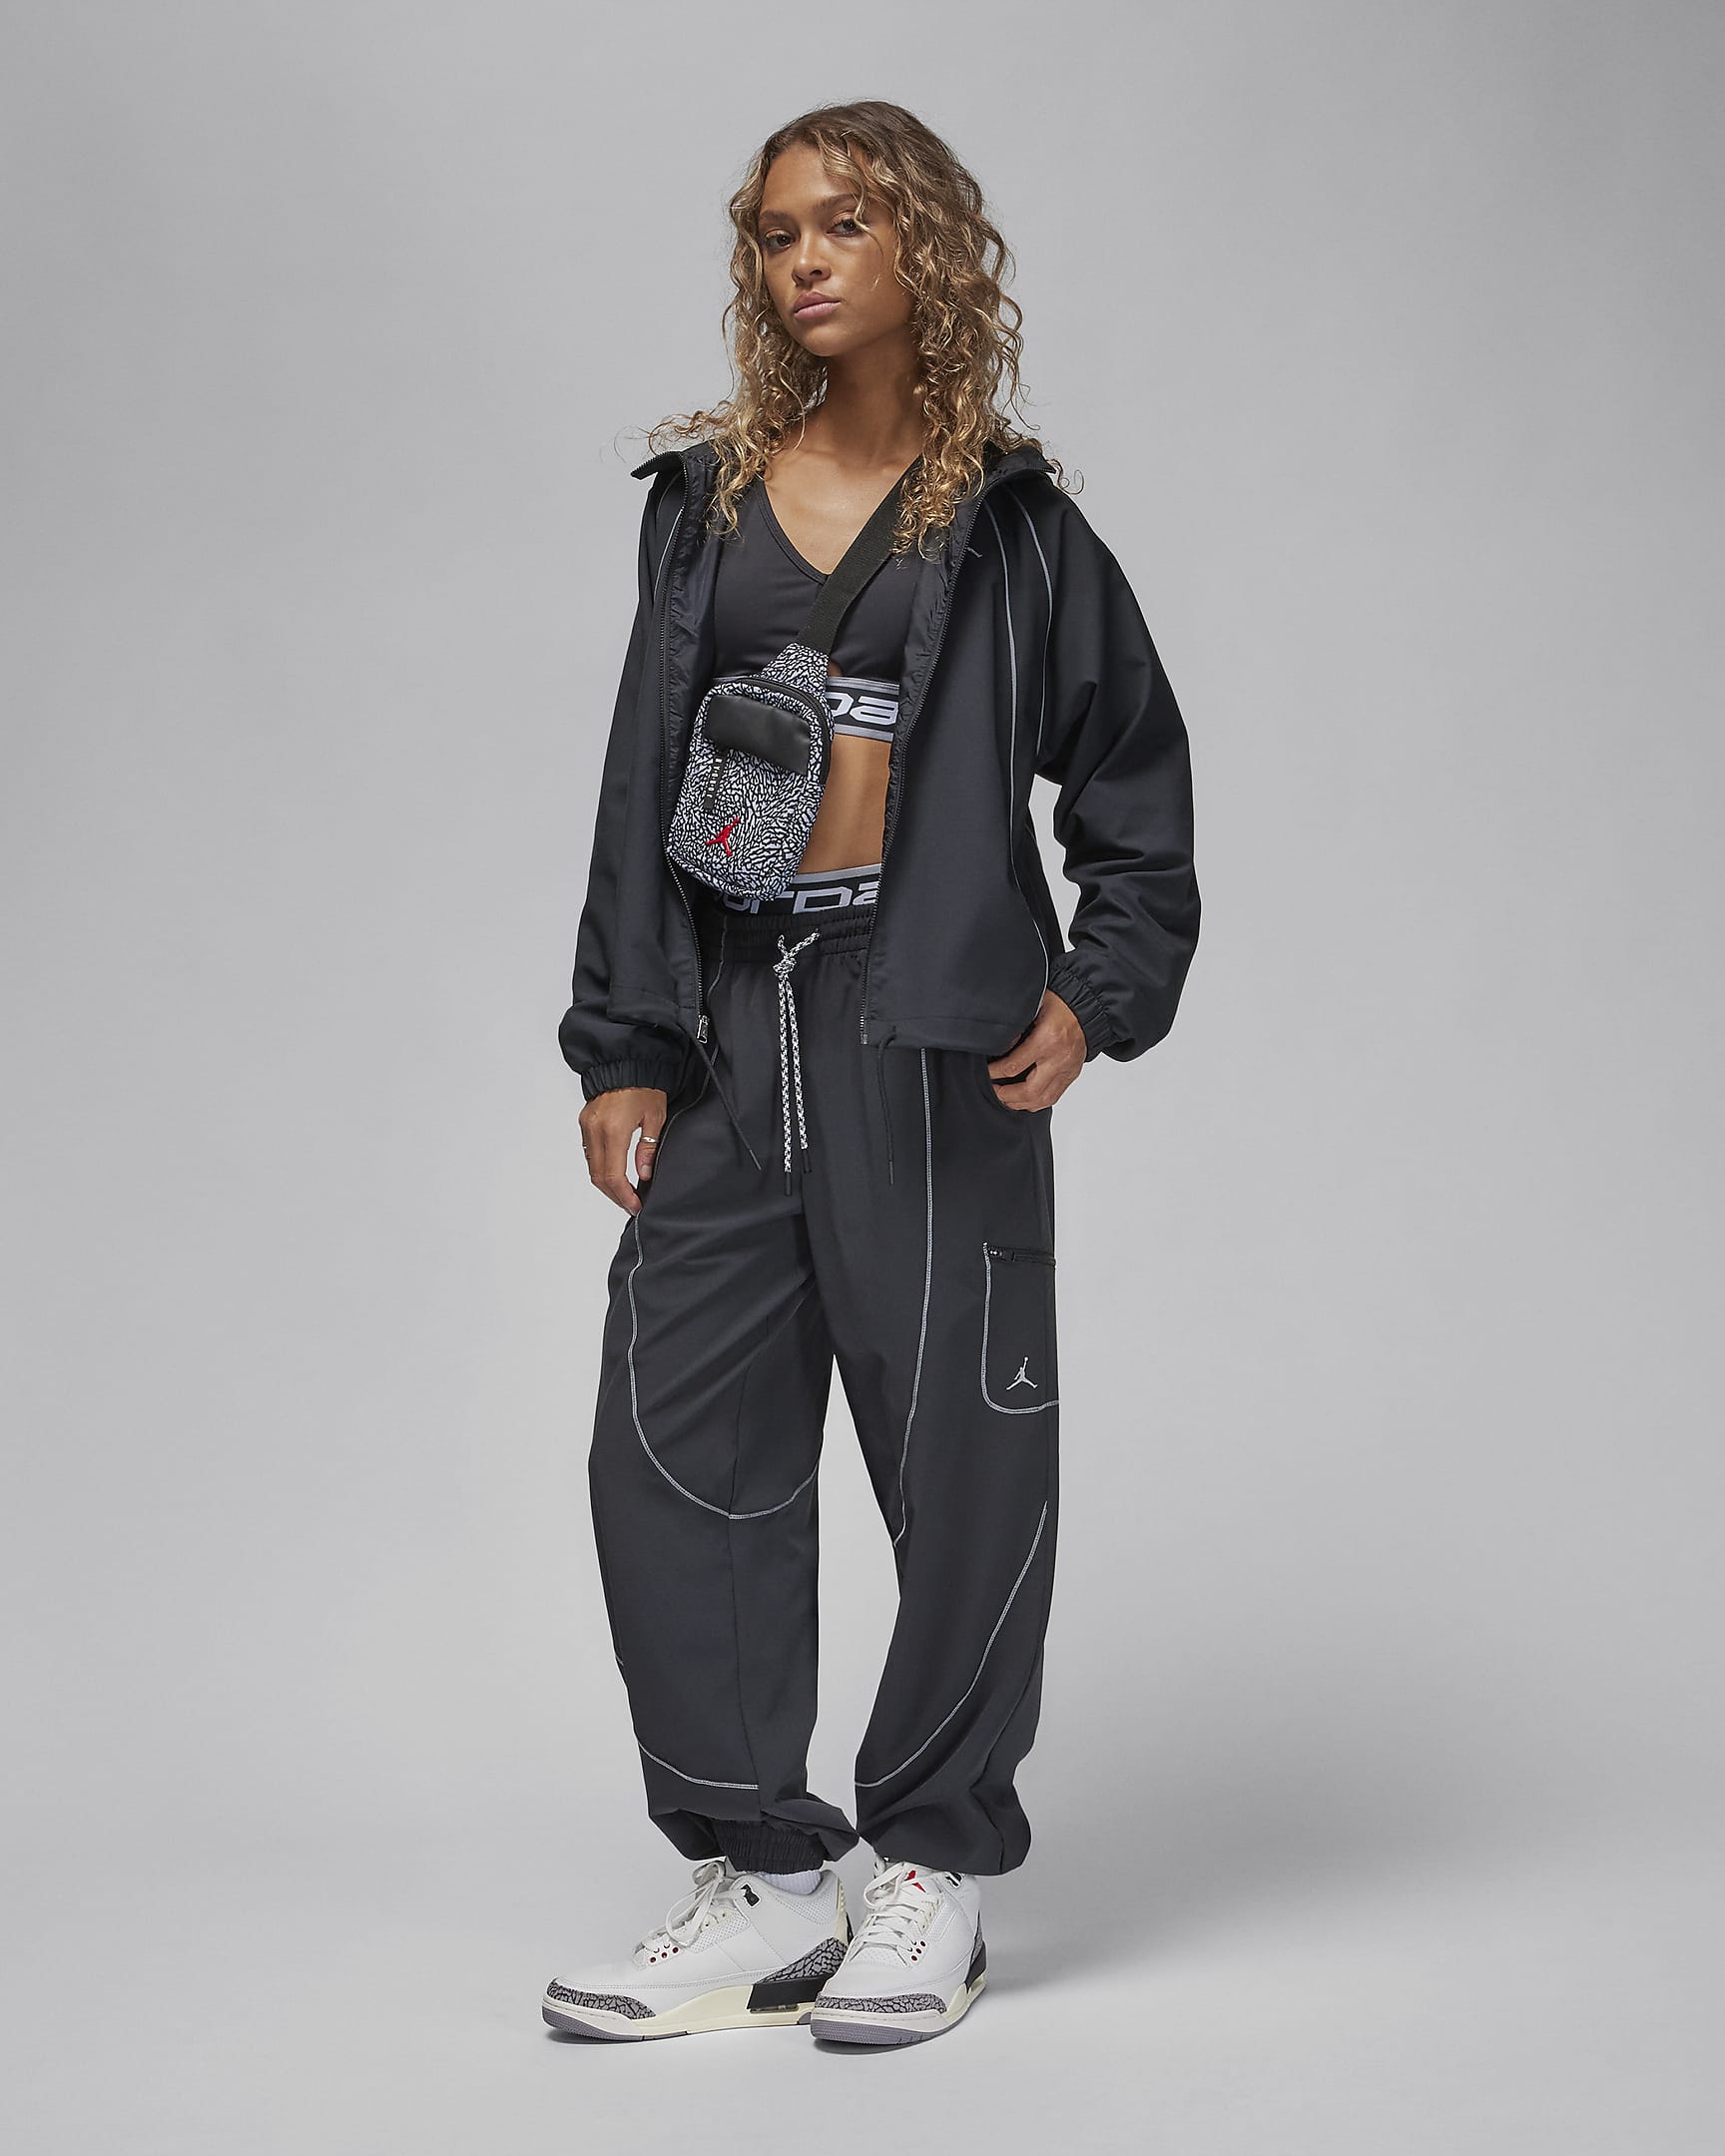 Jordan Women's Woven Lined Jacket. Nike CA